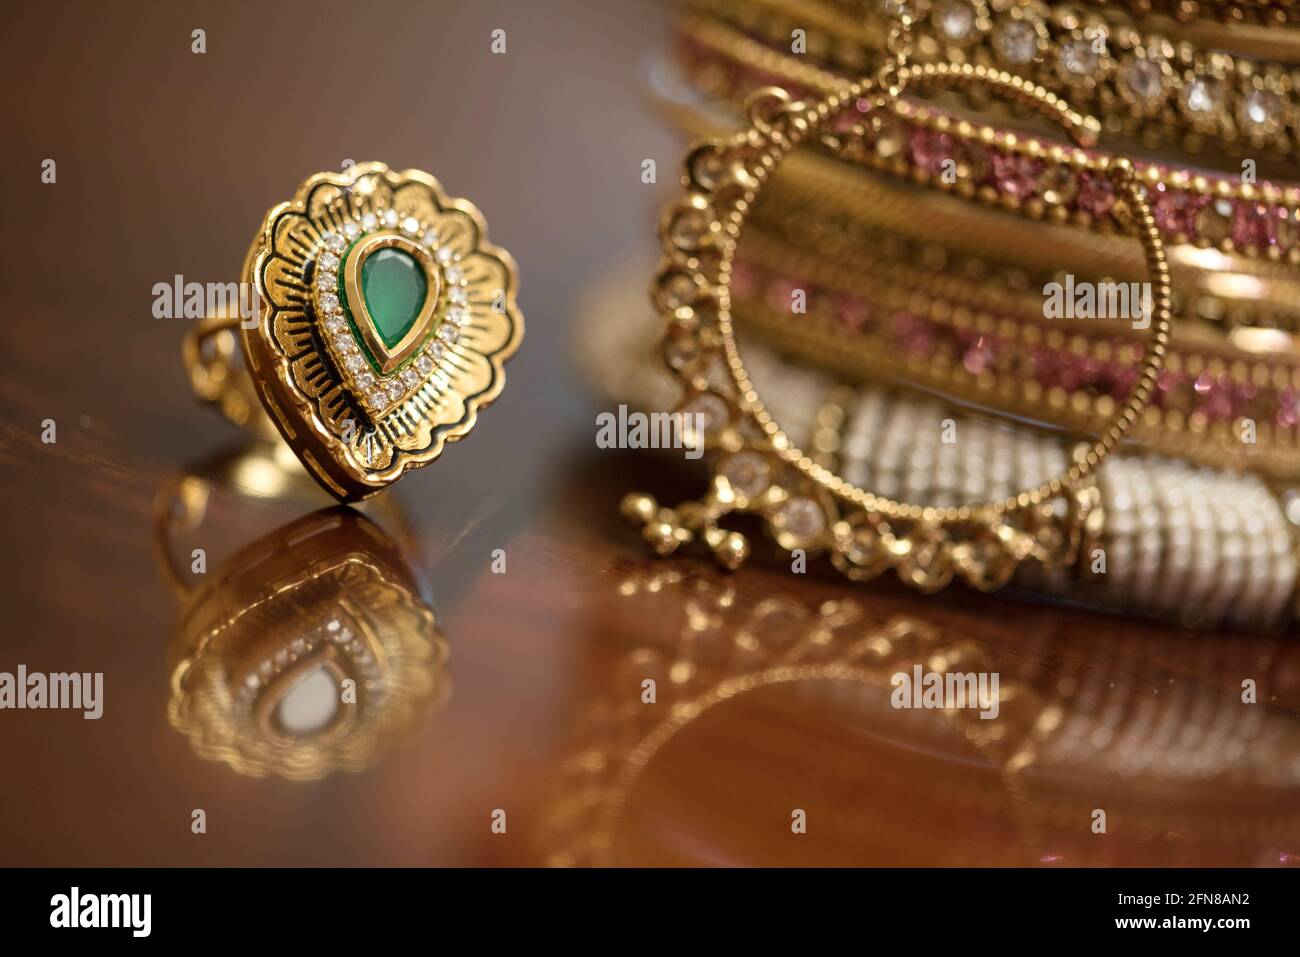 Bague dorée avec pierre verte et bracelets indiens Banque D'Images